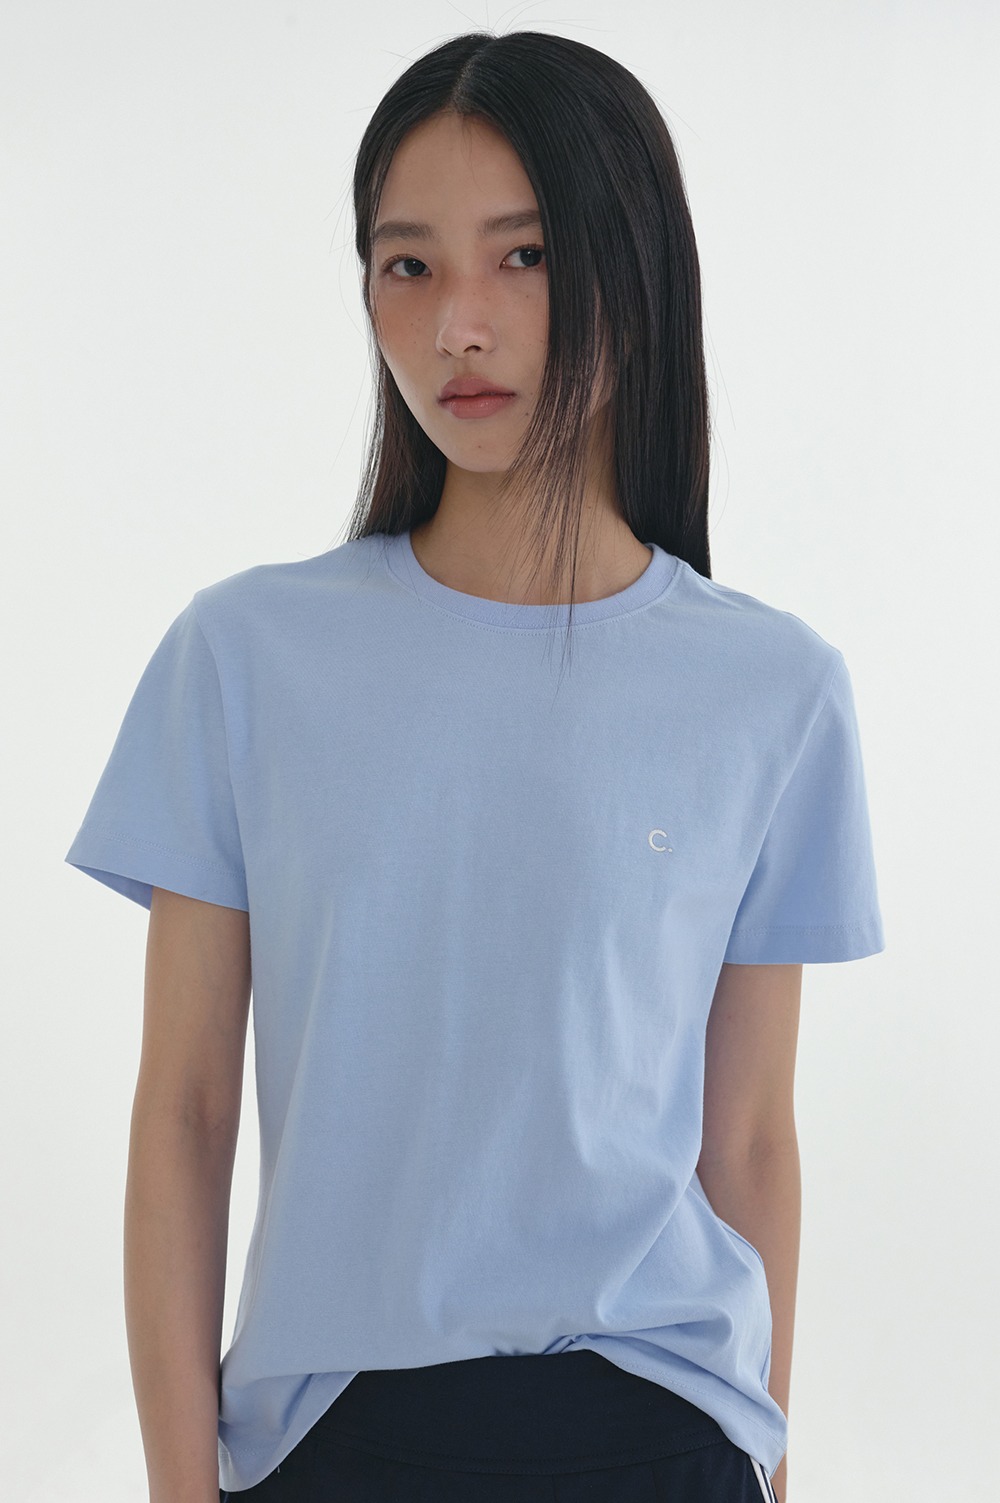 clove - [24SS clove] Daily Fitted T-Shirt (Sky Blue)